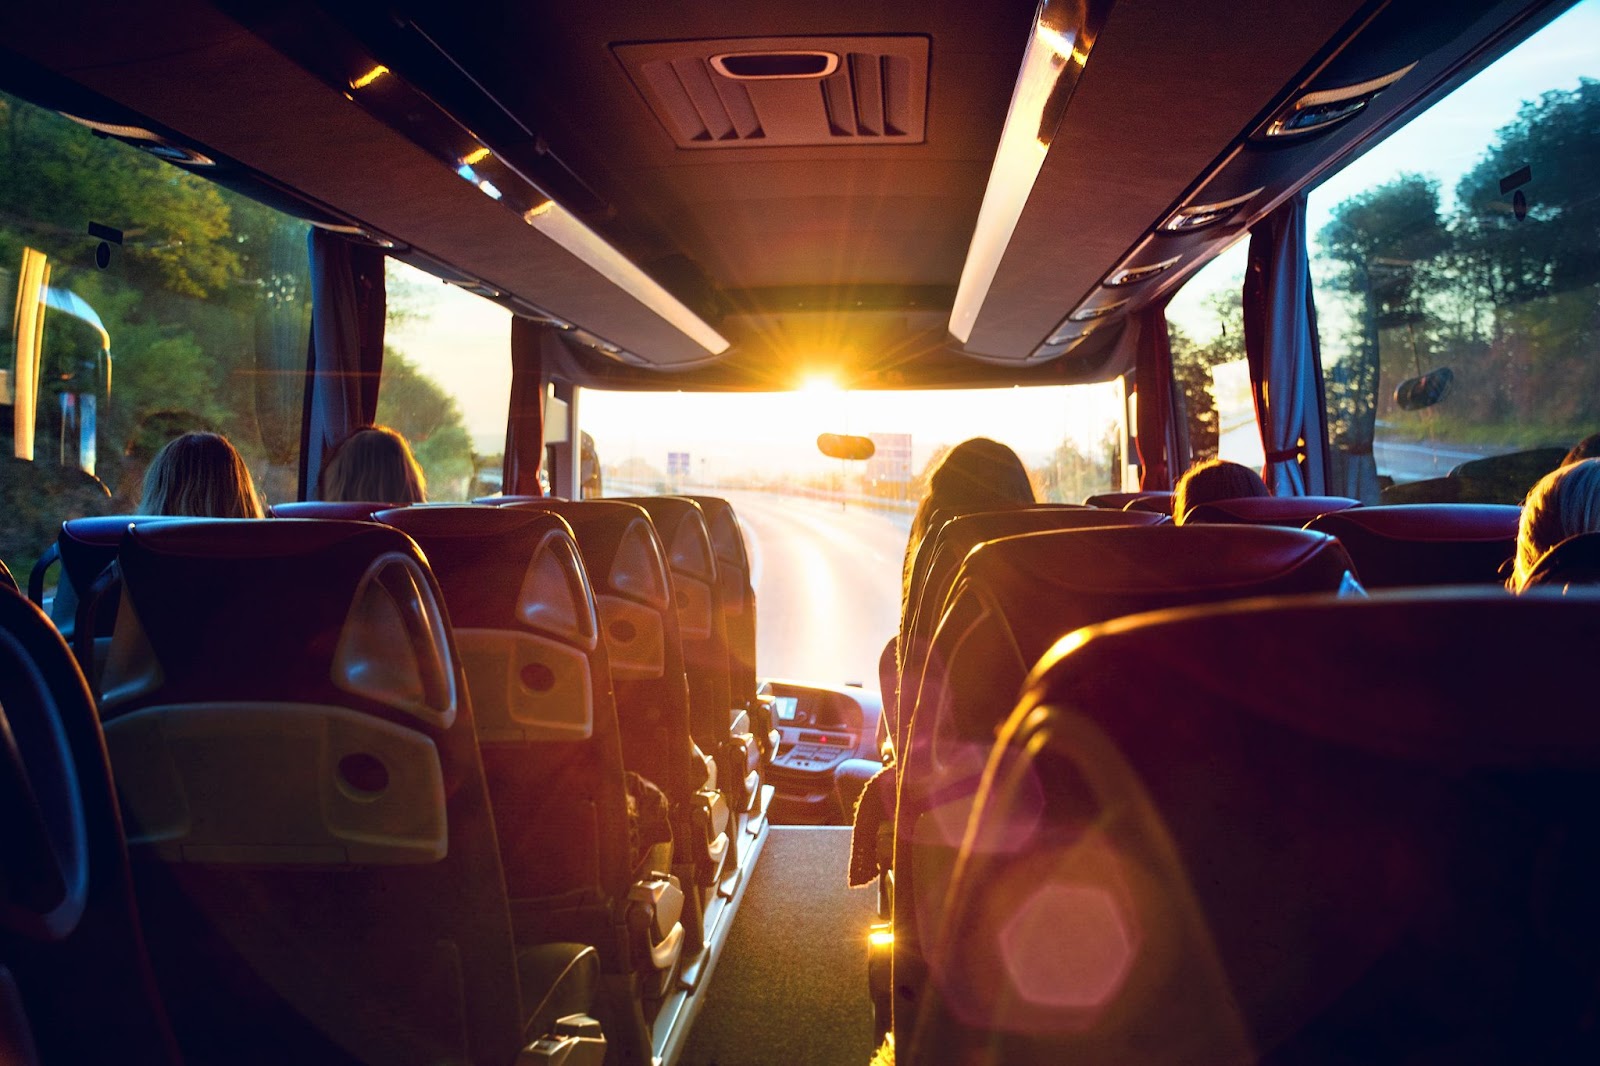 Foto tirada de dentro de um ônibus de viagem, com a luz do sol à frente da estrada.